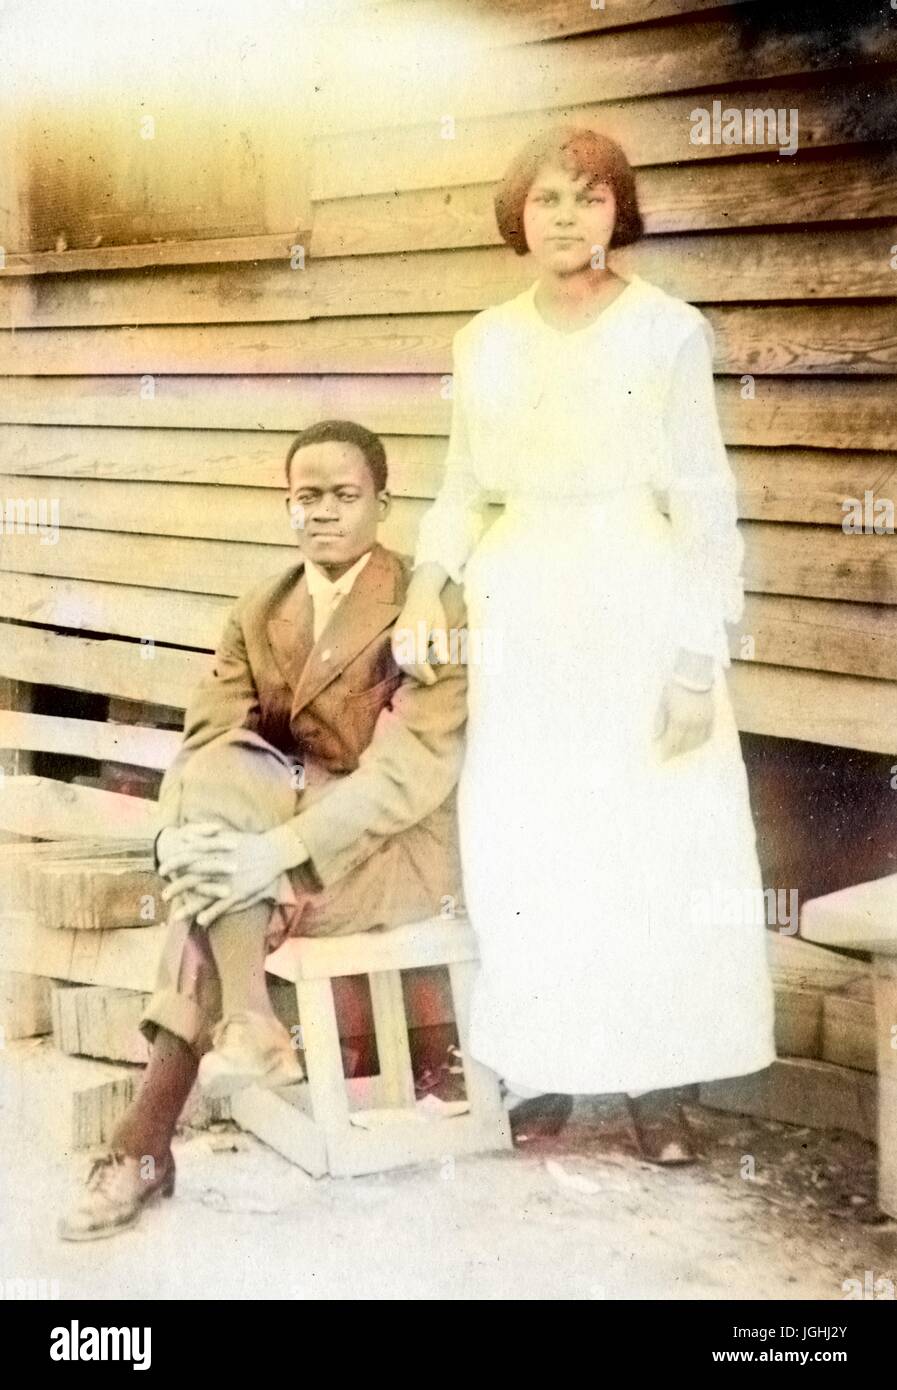 African-American Paar posieren vor einem Haus mit Holz Abstellgleis, Frau trägt weißes Kleid und stehend, Mann sitzt auf einer Holzkiste mit seiner Hand auf sein Knie, 1910. Hinweis: Bild wurde digital eingefärbt wurde mit einem modernen Verfahren. Farben können Zeit ungenau sein. Stockfoto